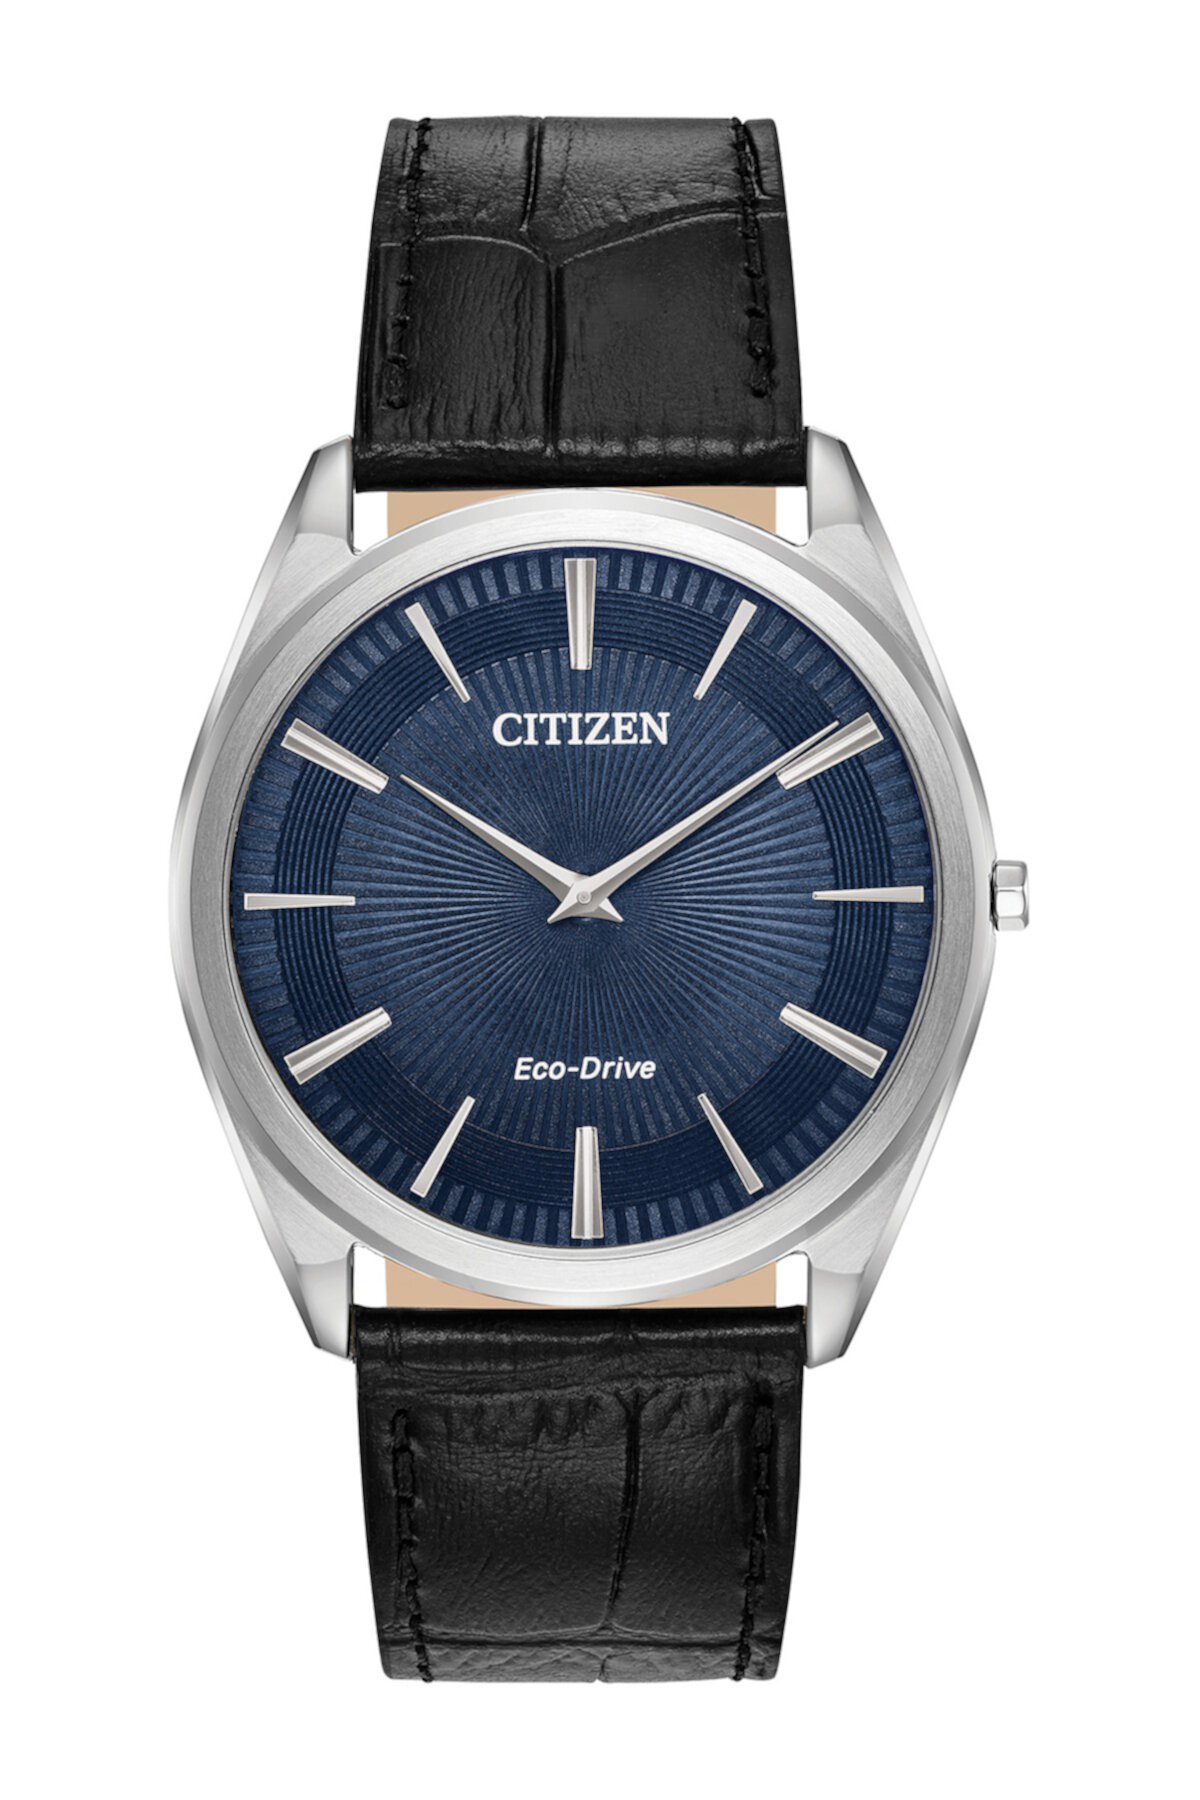 Мужские часы Stiletto Eco-Drive с гильошированным циферблатом, 38 мм Citizen